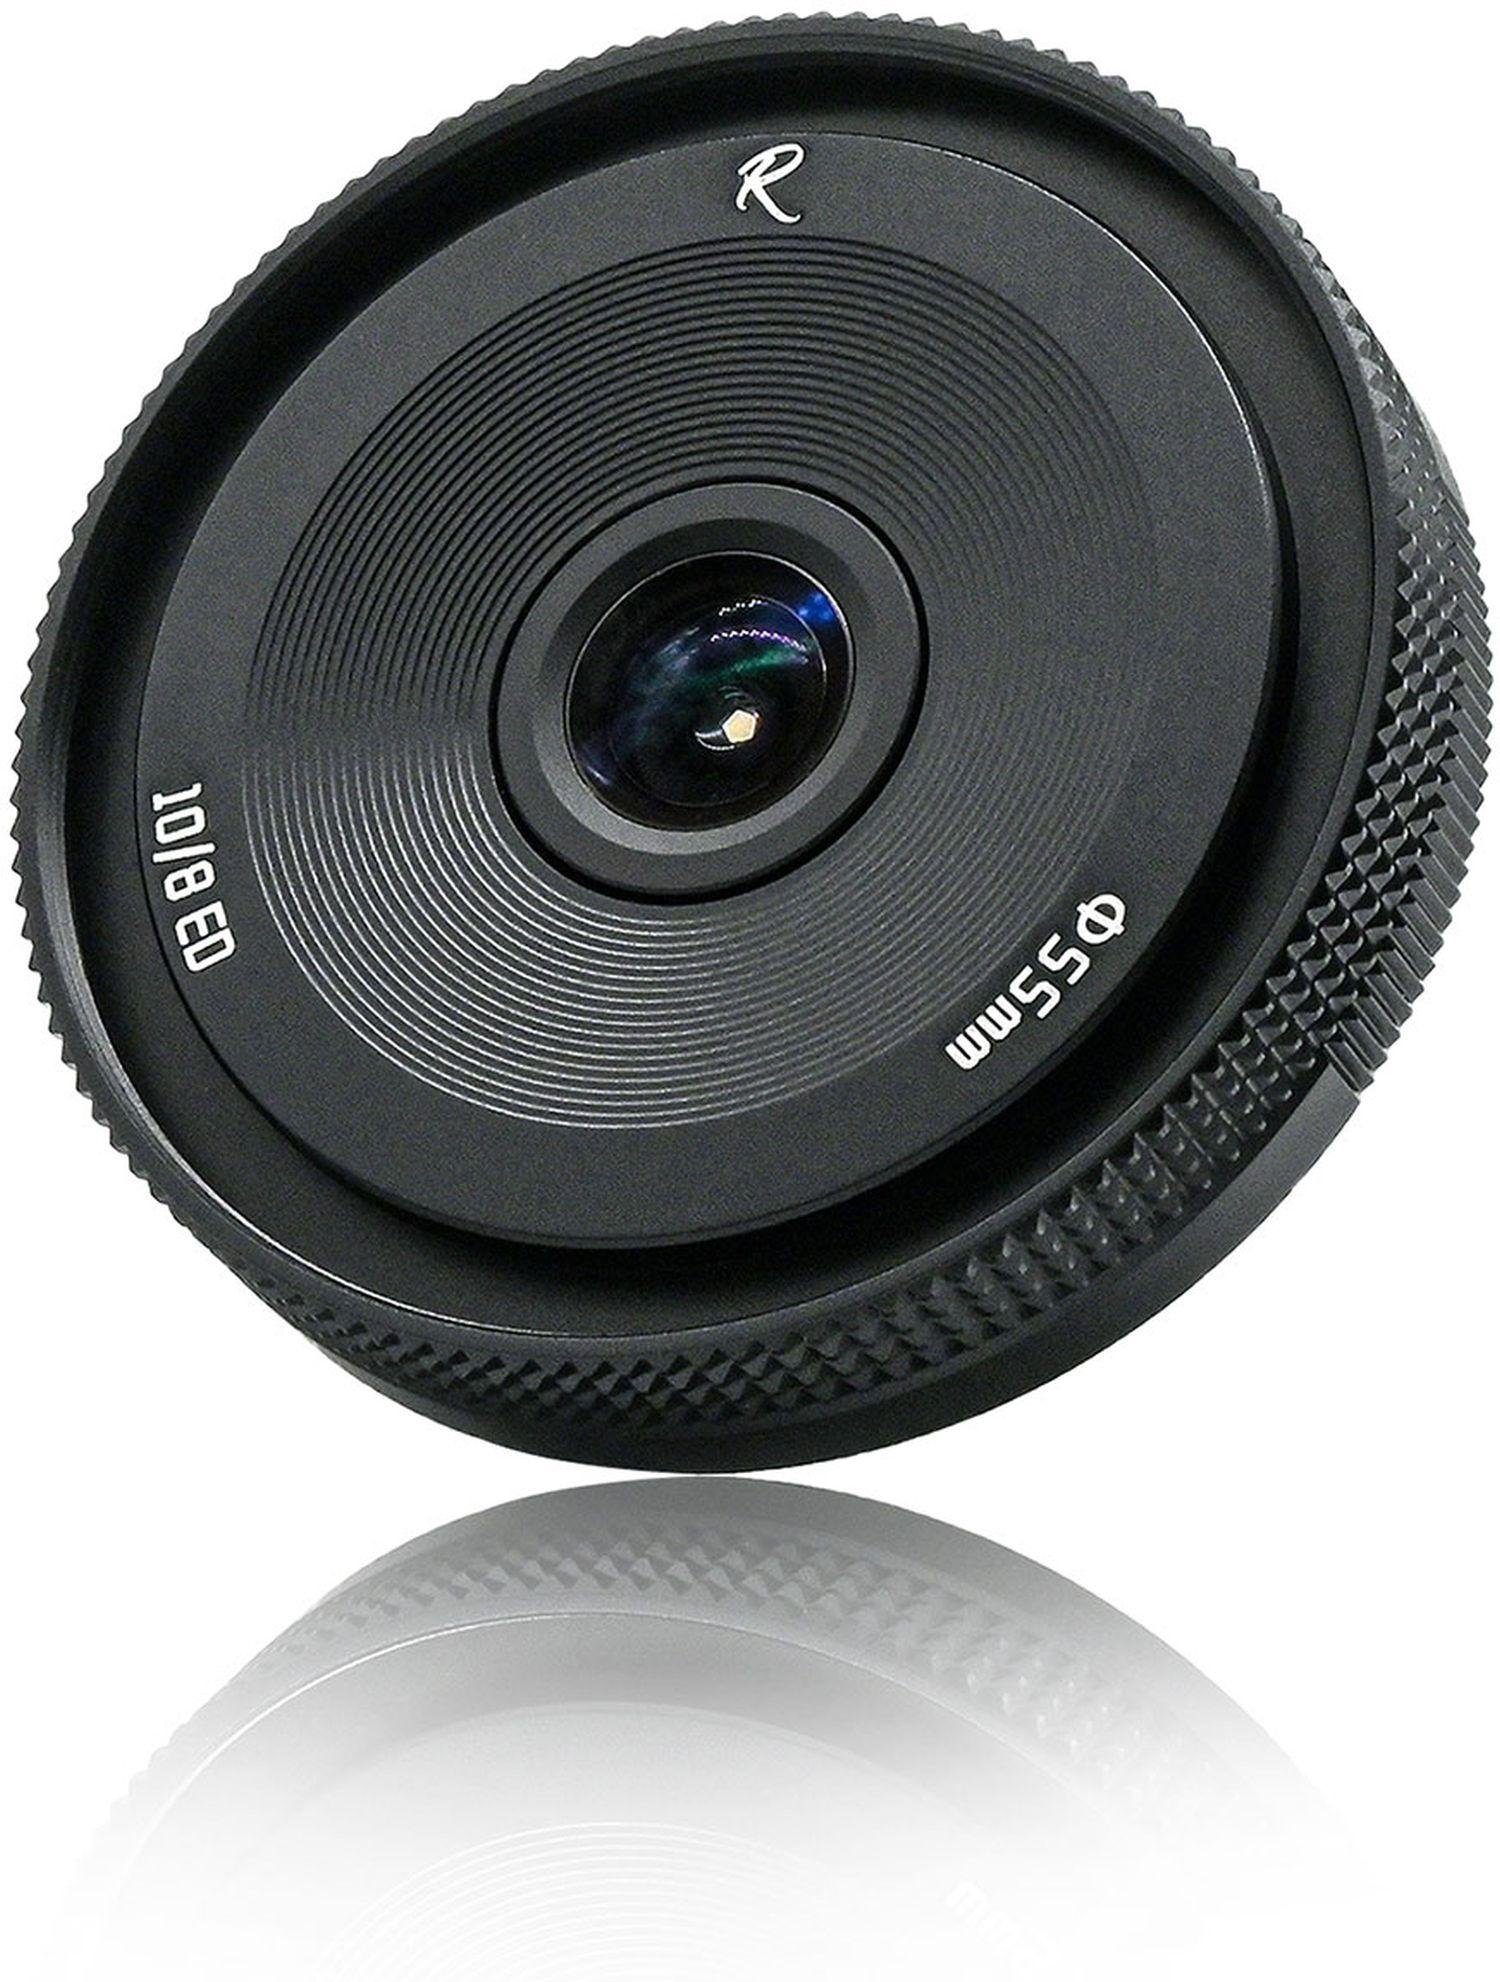 AstrHori 10mm f8 II für Sony E-Mount Objektiv